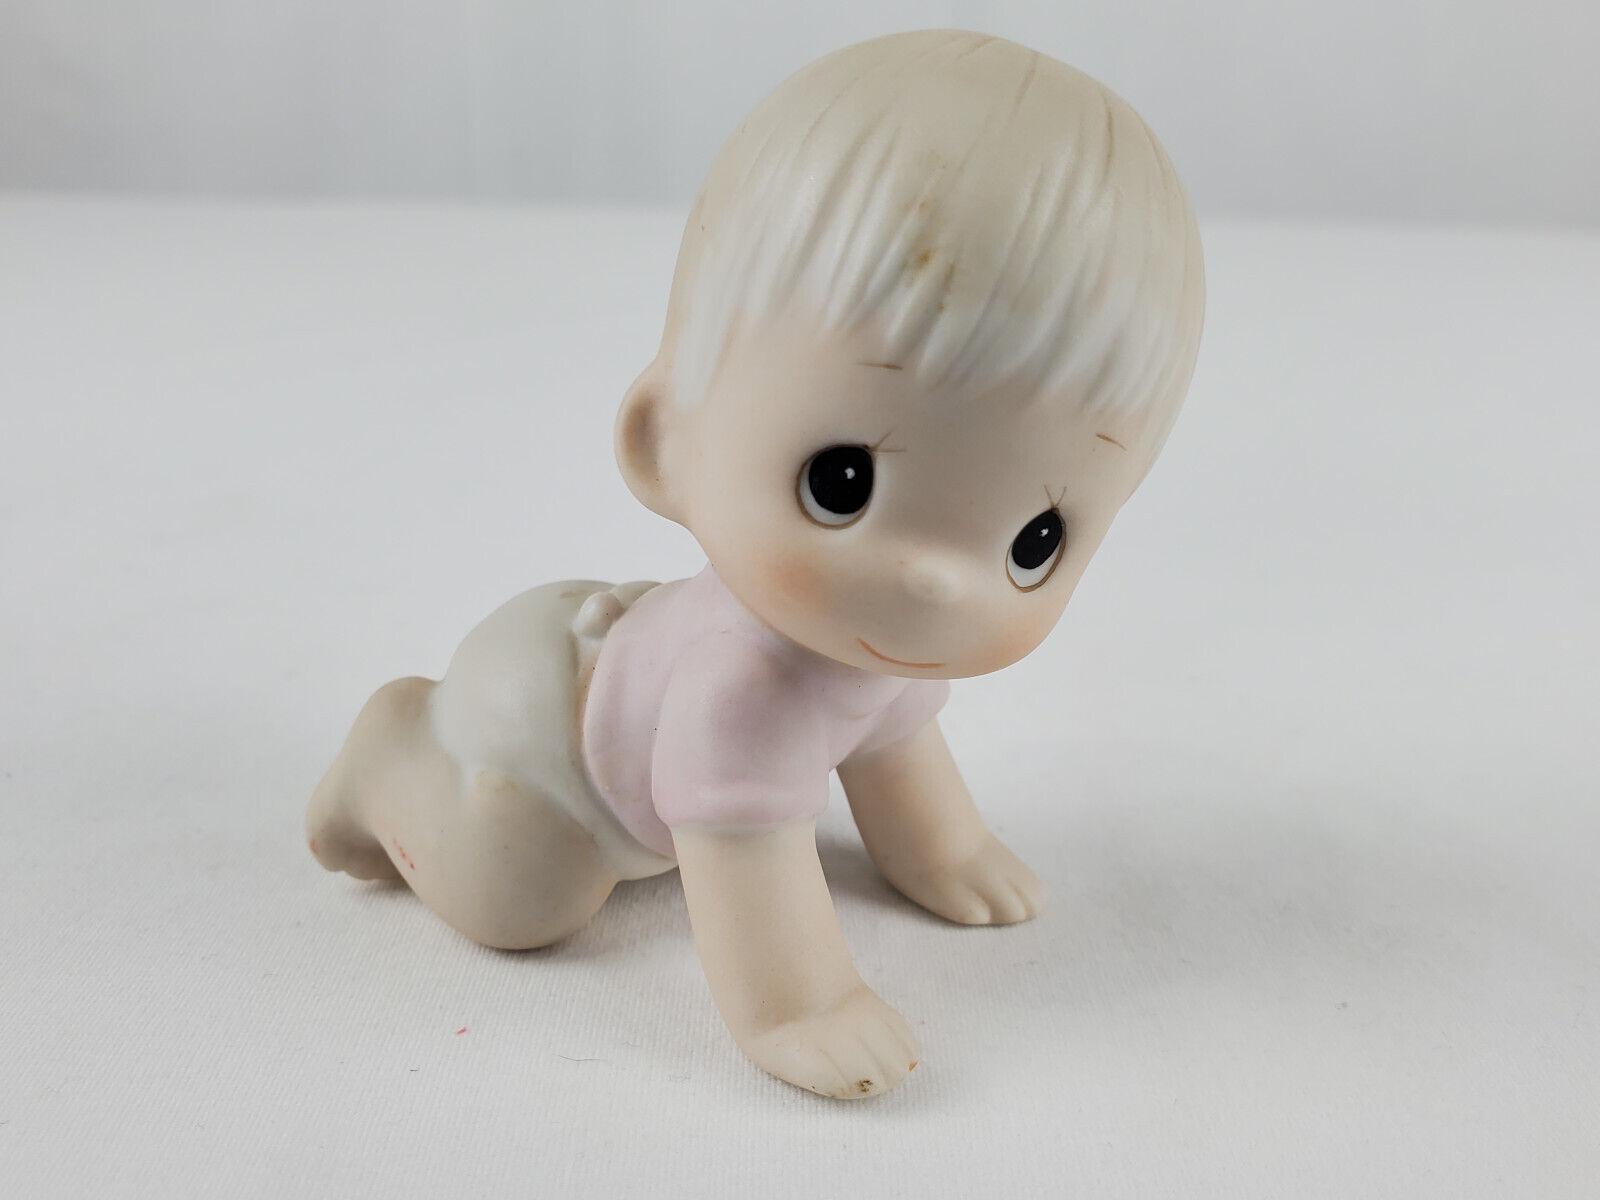 Enesco Precious Moments Baby Crawling E2852 Figurine - No Box